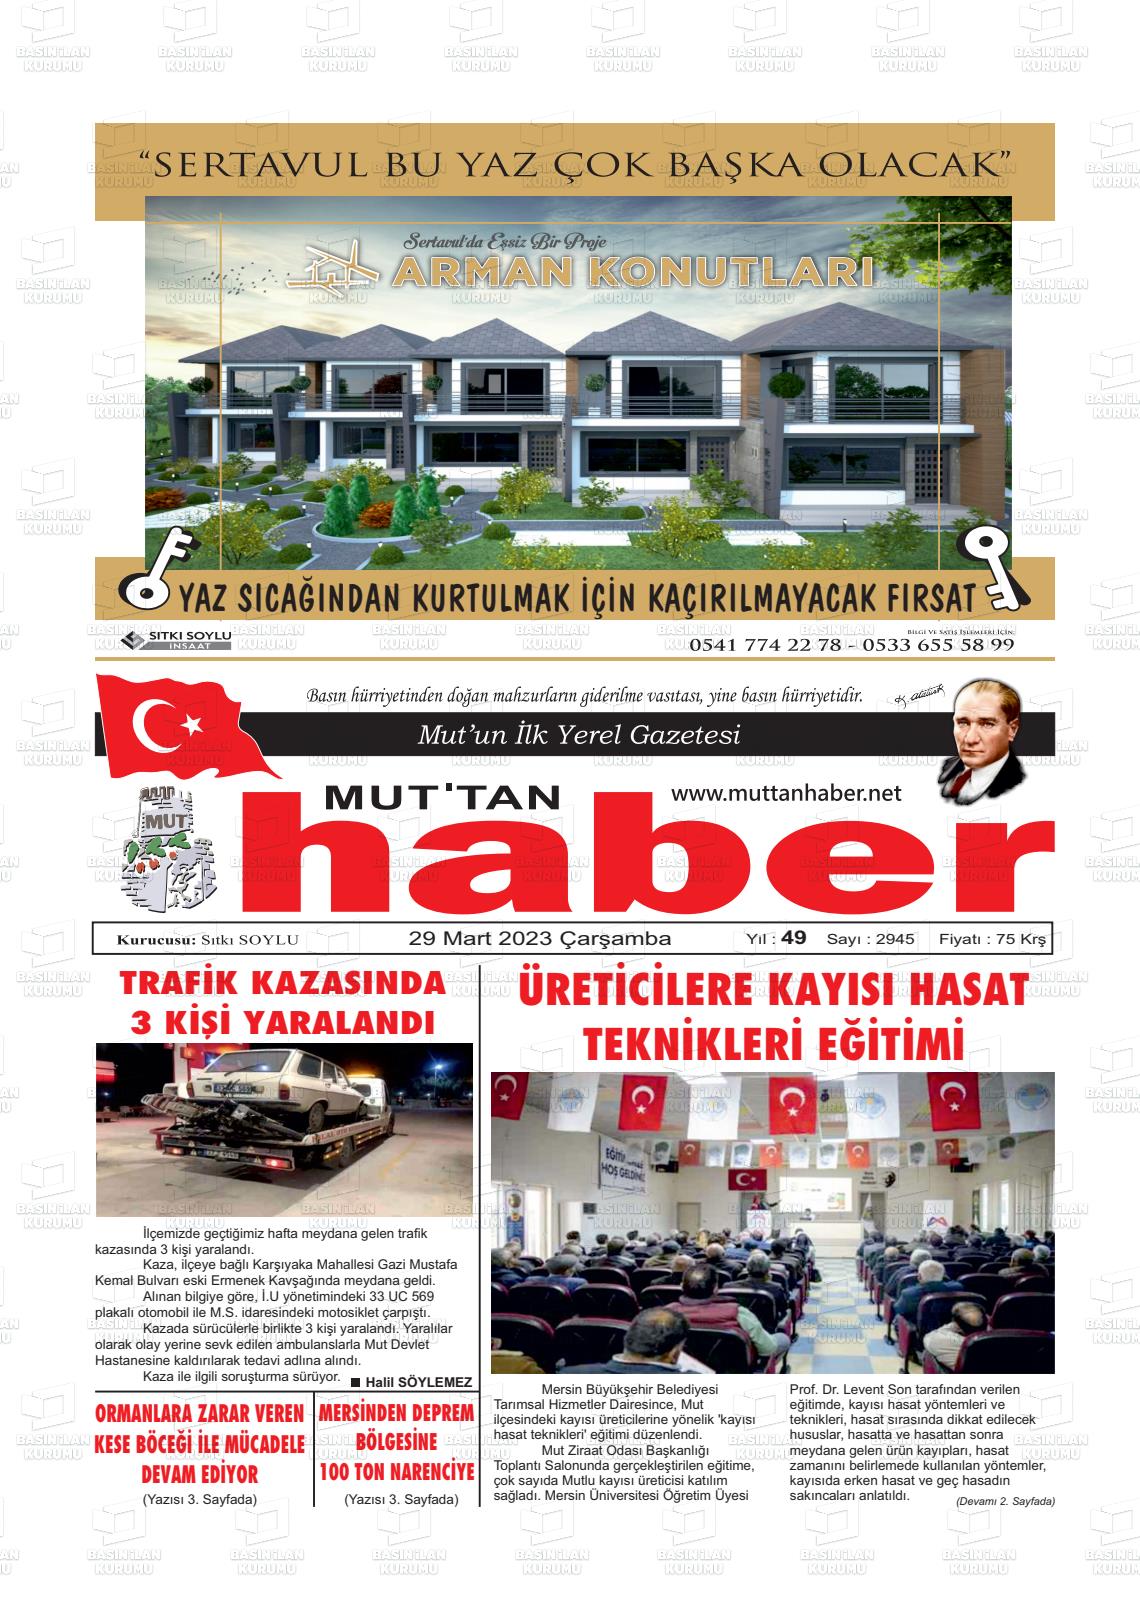 29 Mart 2023 Mut'tan Haber Gazete Manşeti